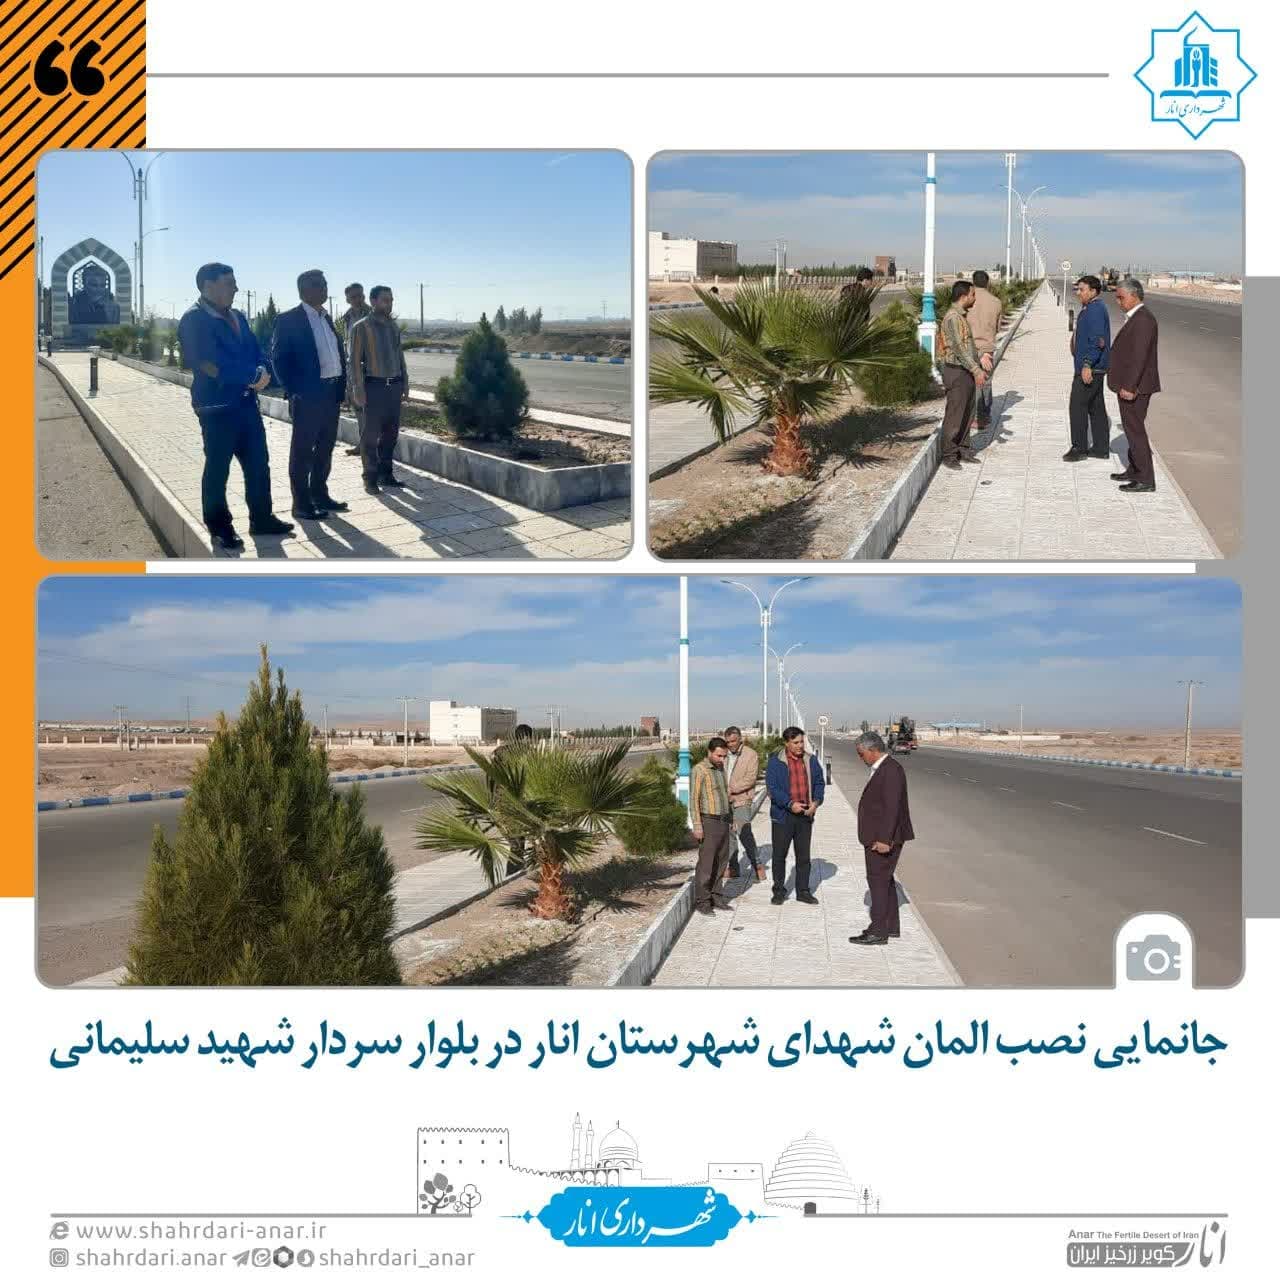 جانمایی نصب المان شهدای شهرستان انار در بلوار سردار شهید سلیمانی